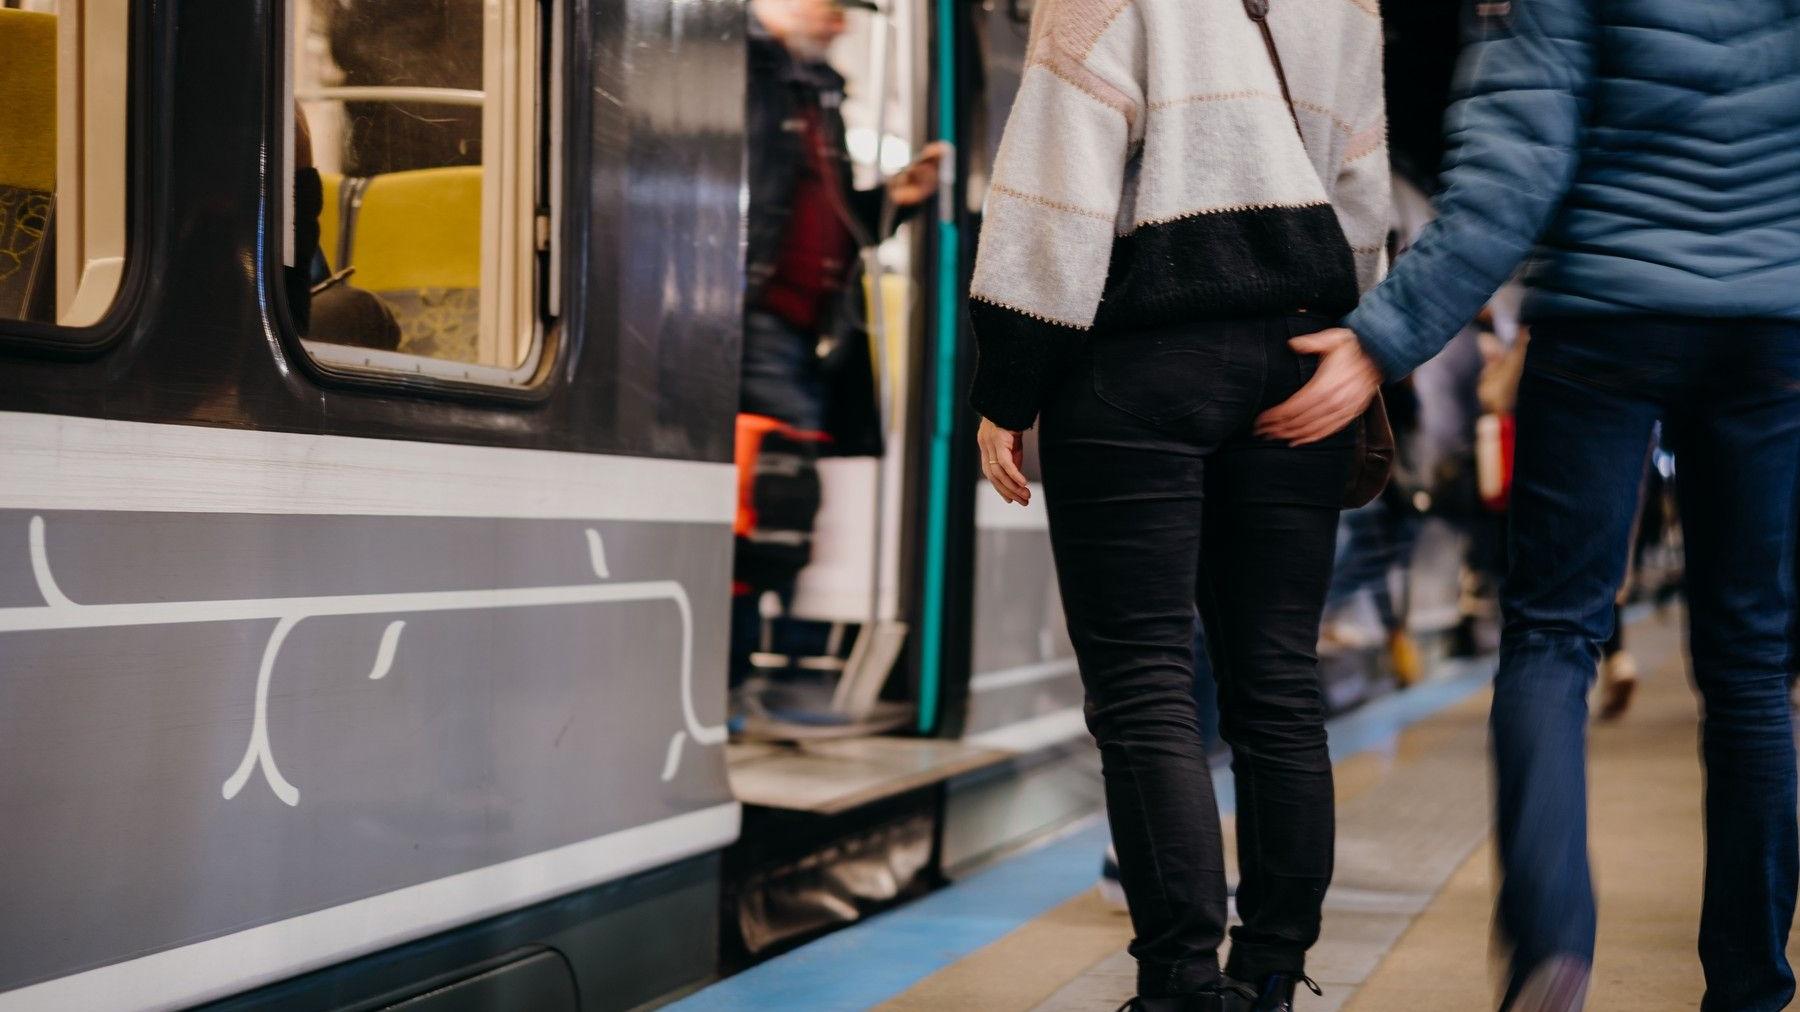 Sexuálne obťažovanie v MHD, vo vlakoch a verejne je dnes stále bežné a zákonom i spoločnosťou nedostatočne odsúdené 